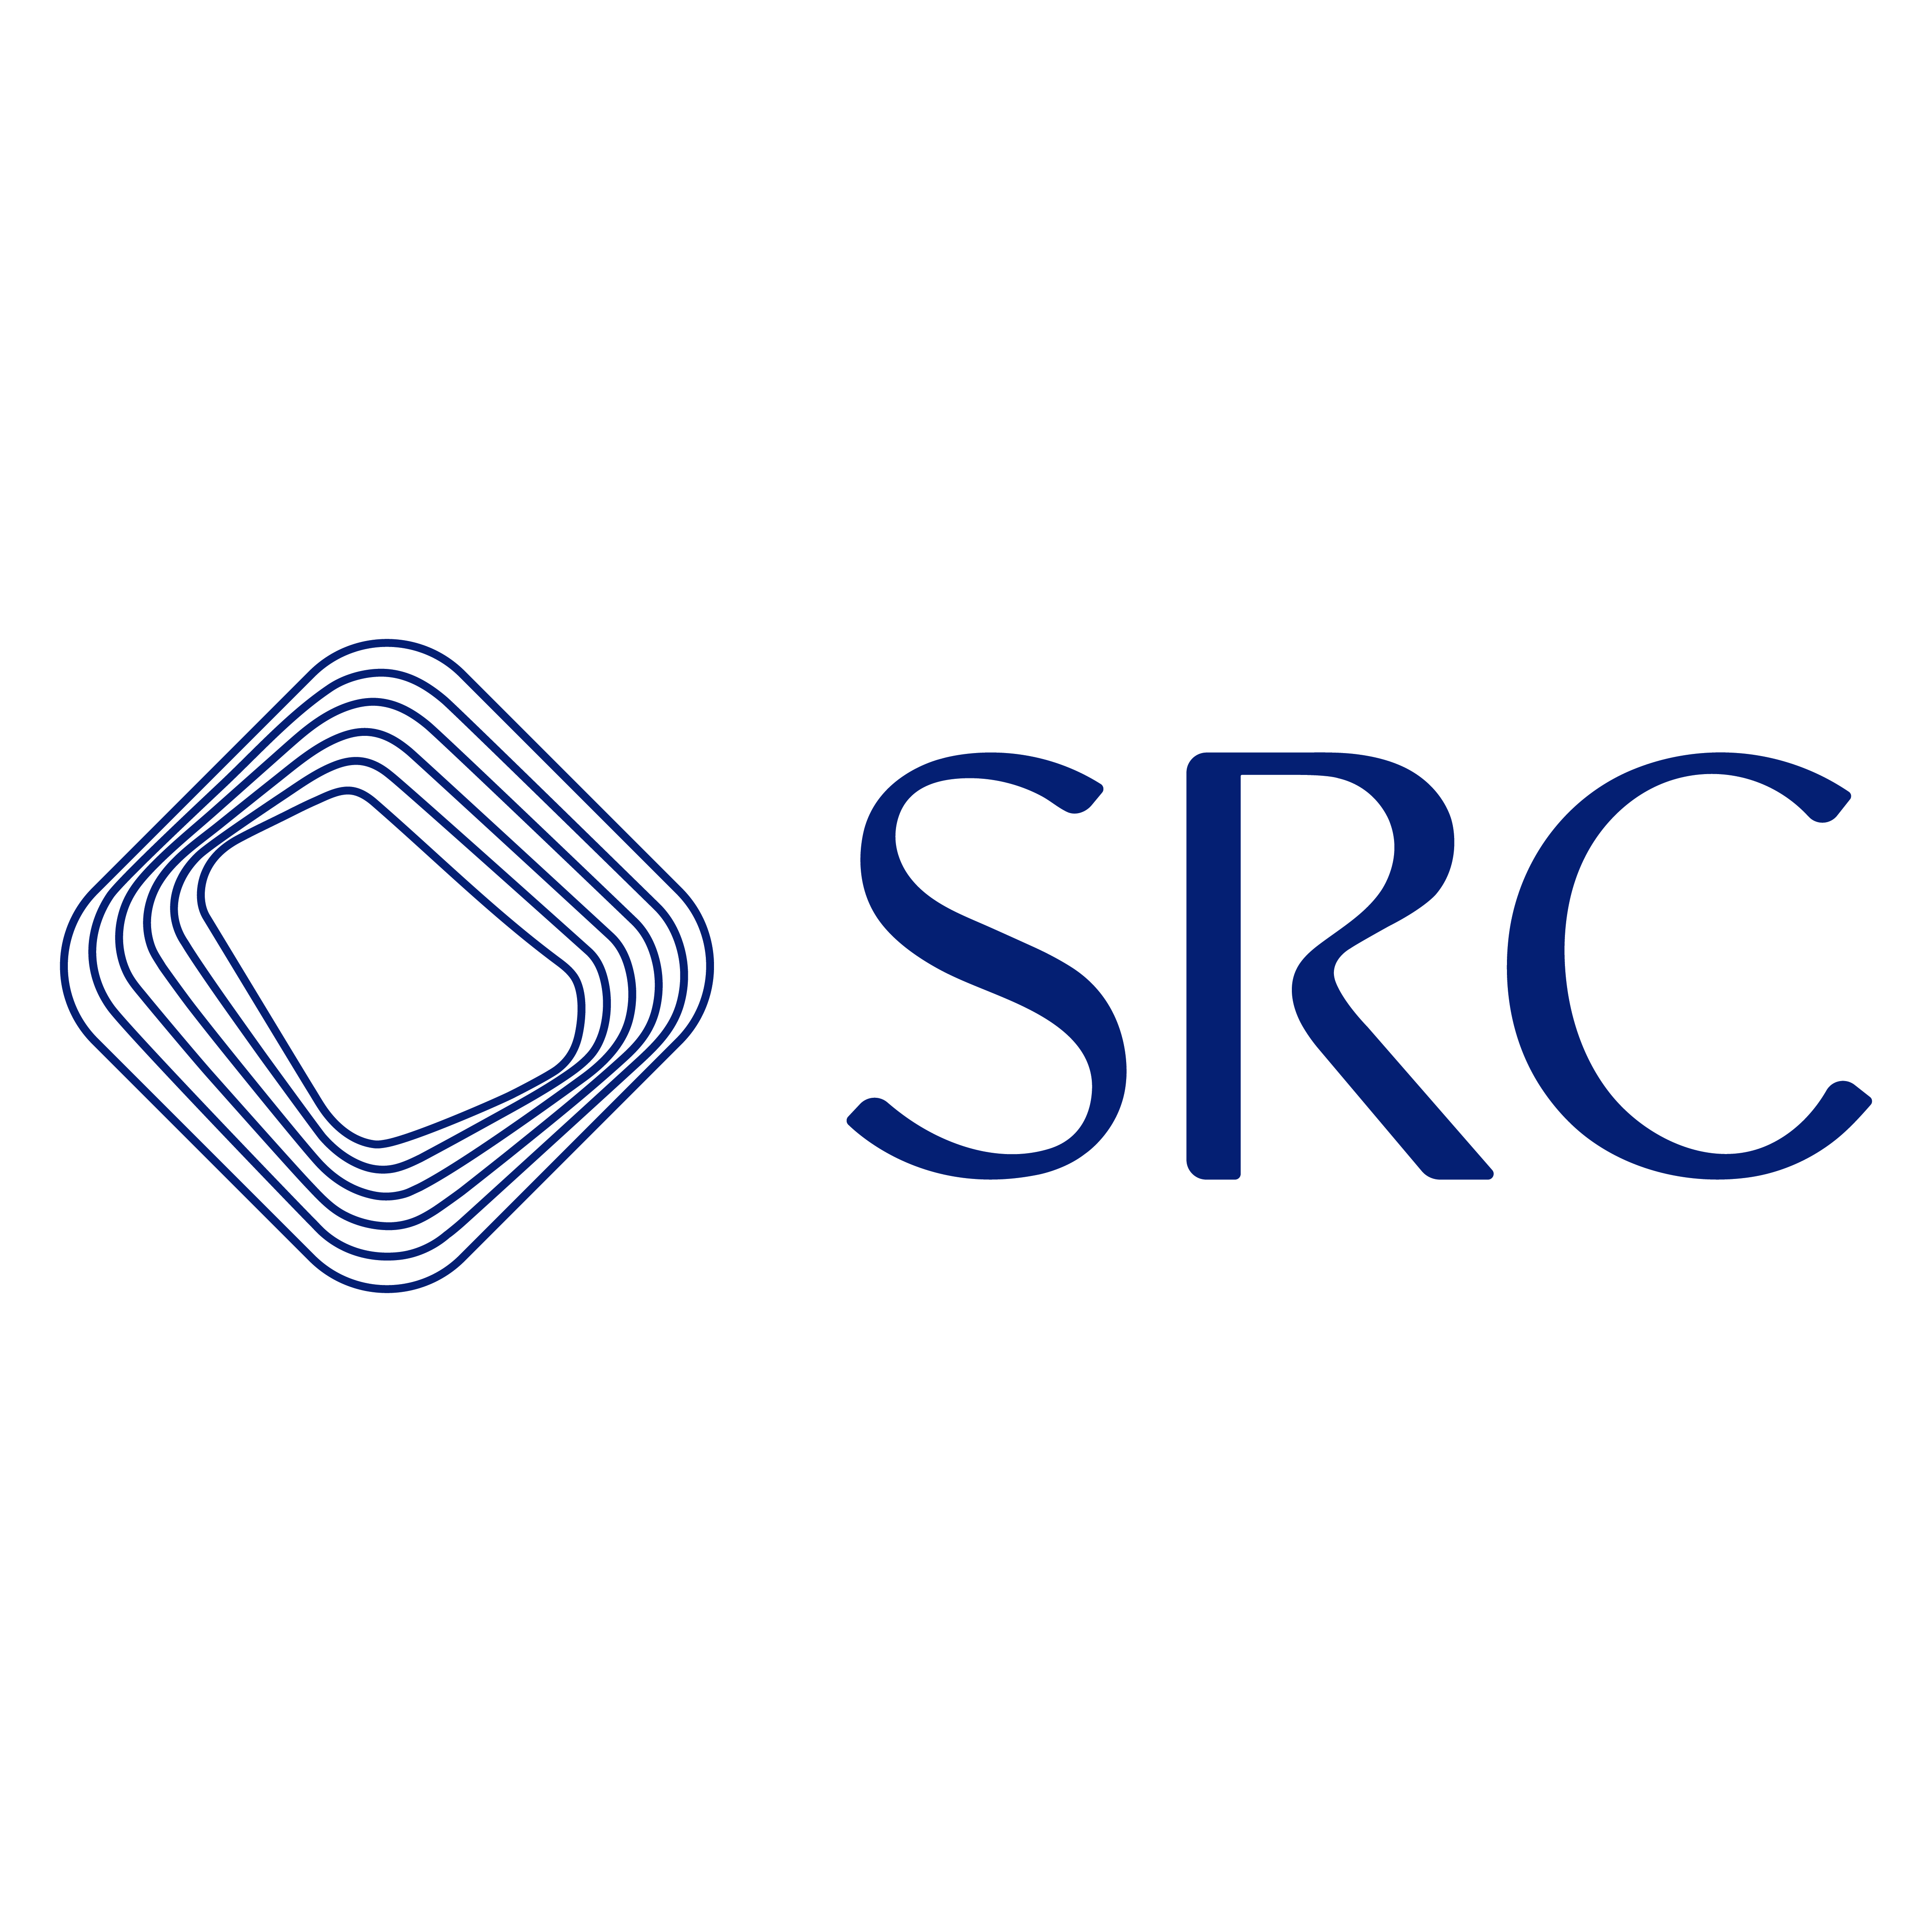 السعودية لإعادة التمويل العقاري "SRC" تحصل على تصنيفات ائتمانية عالية من "فيتش" و"موديز"